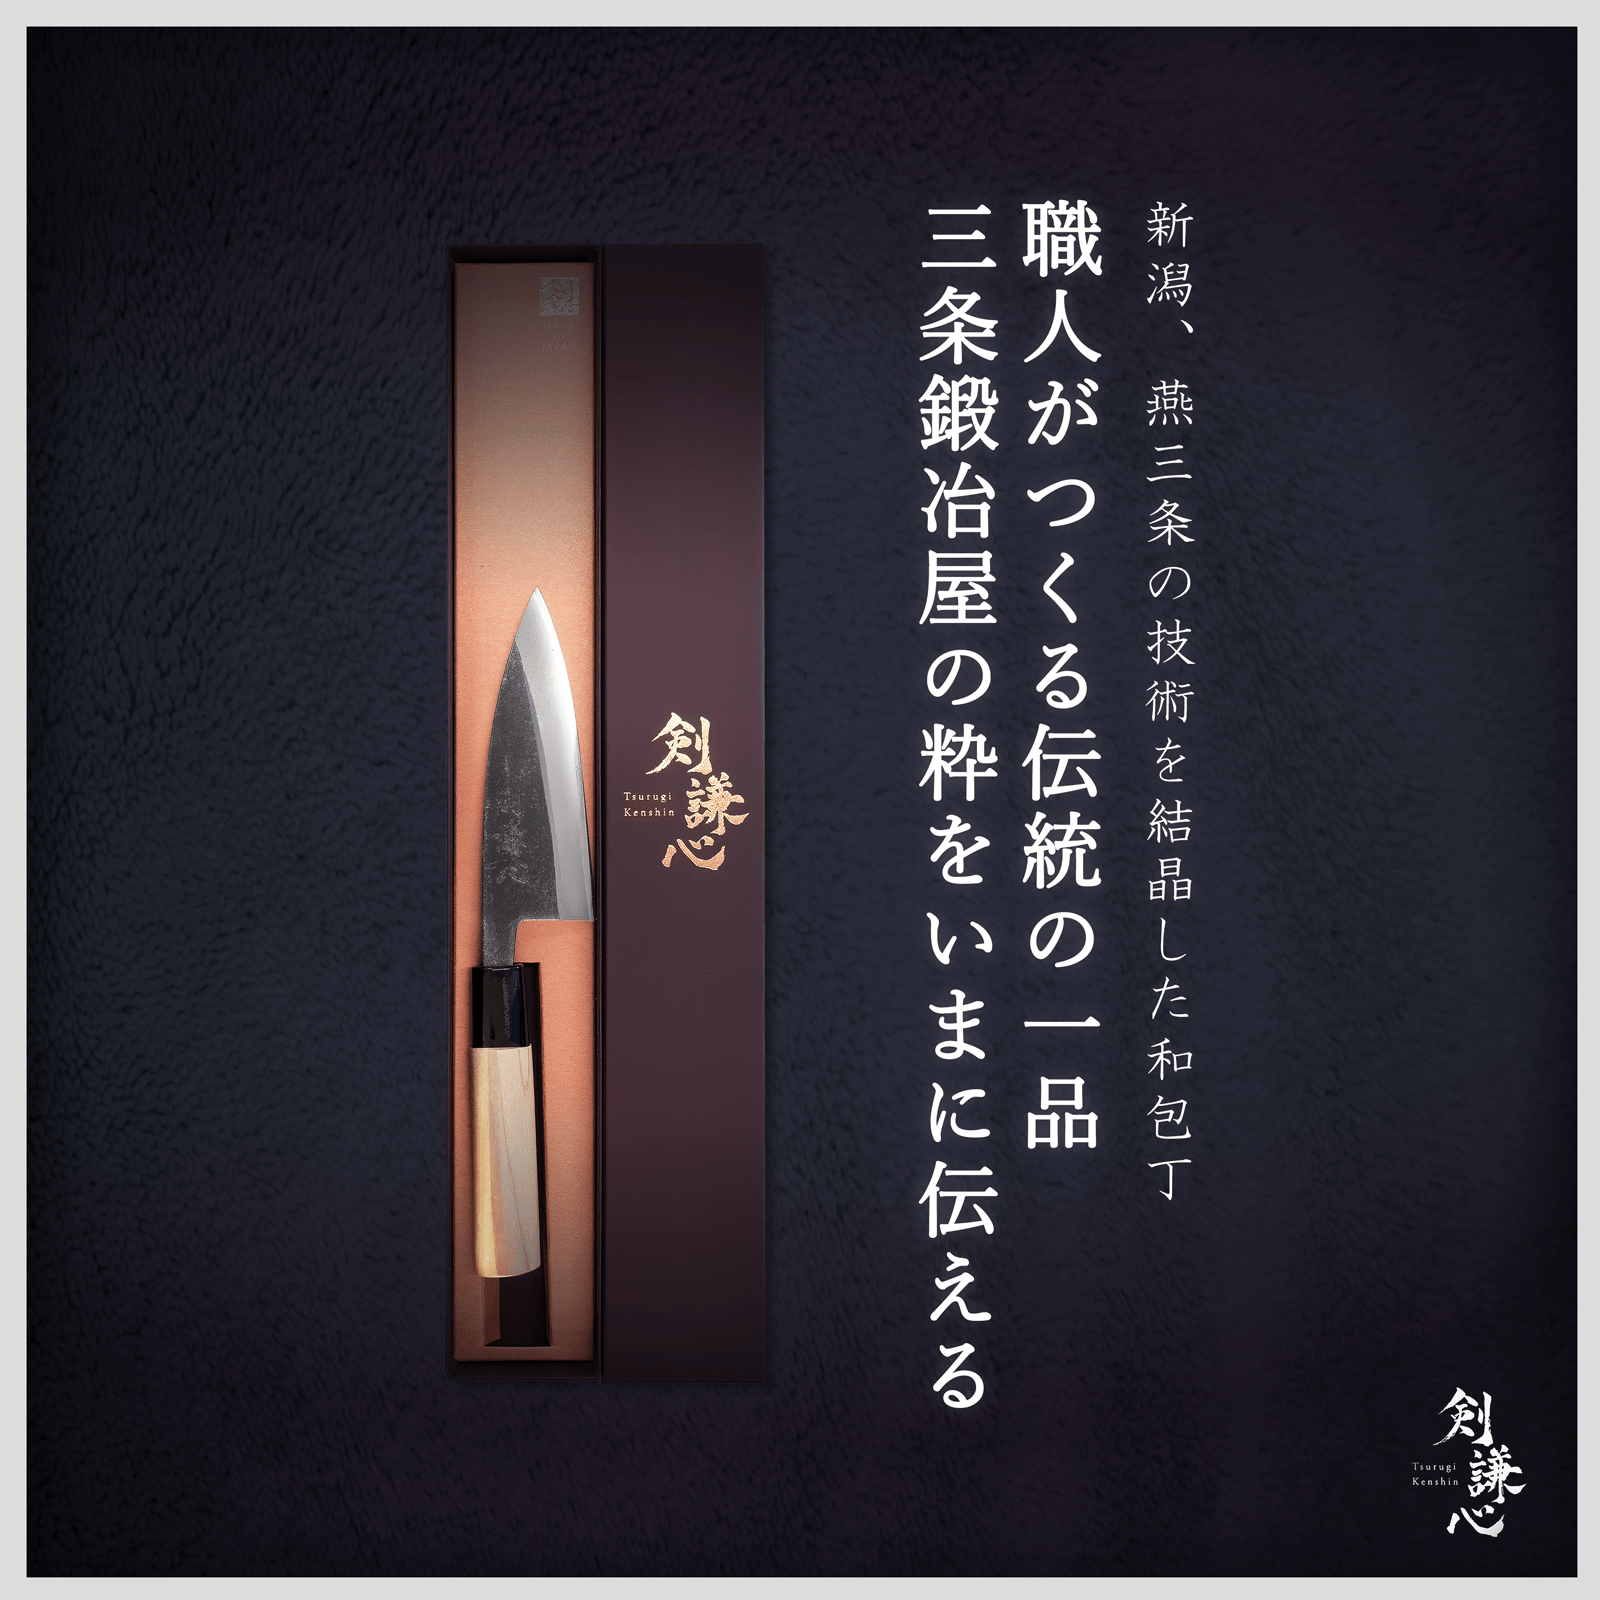 剣謙心 鯵切包丁 120mm - 剣謙心 Tsurugi KenshinAjikiri Knife